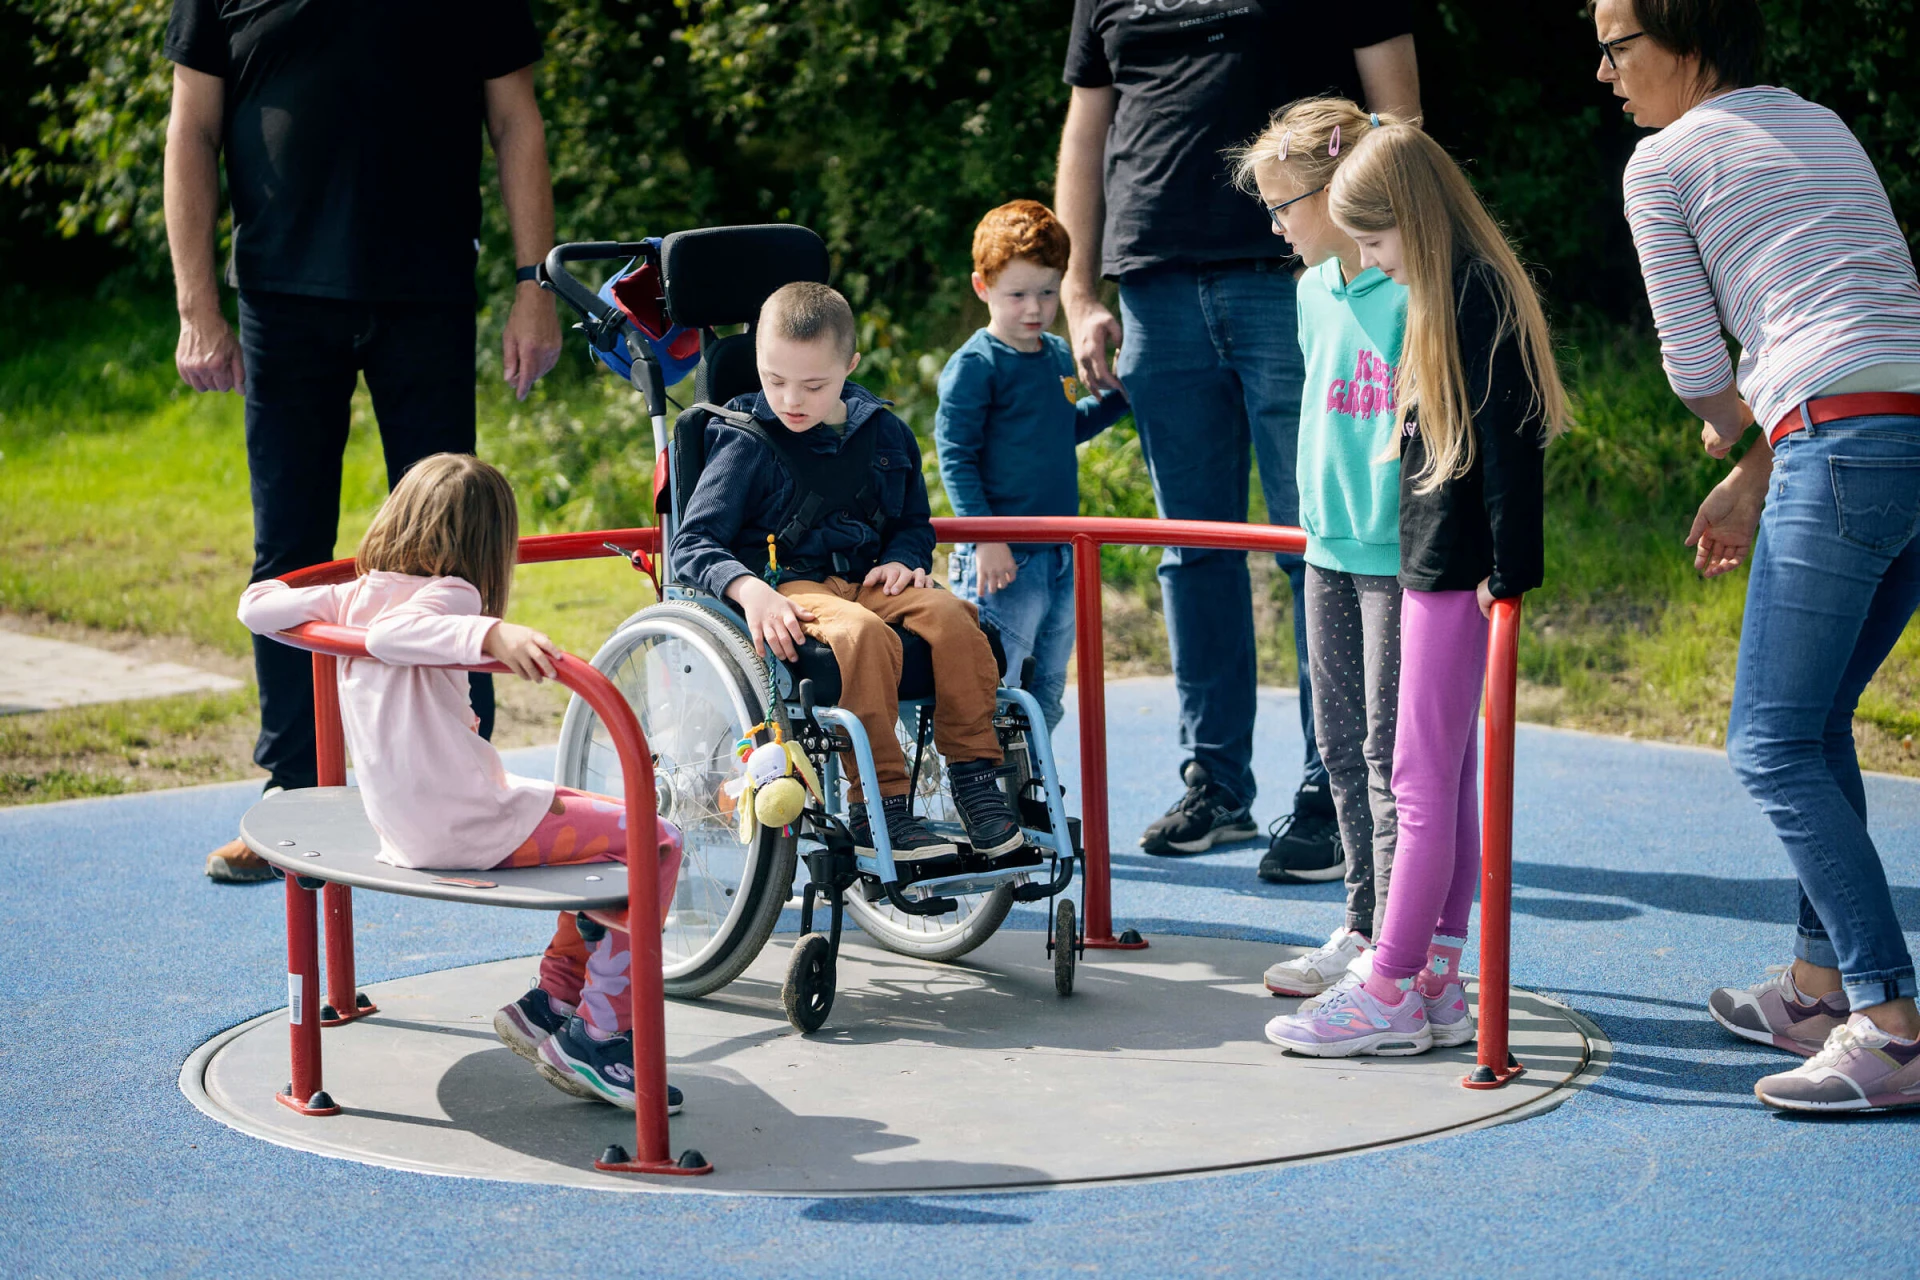 Børn leger på en kørestolskarrusel på en legeplads